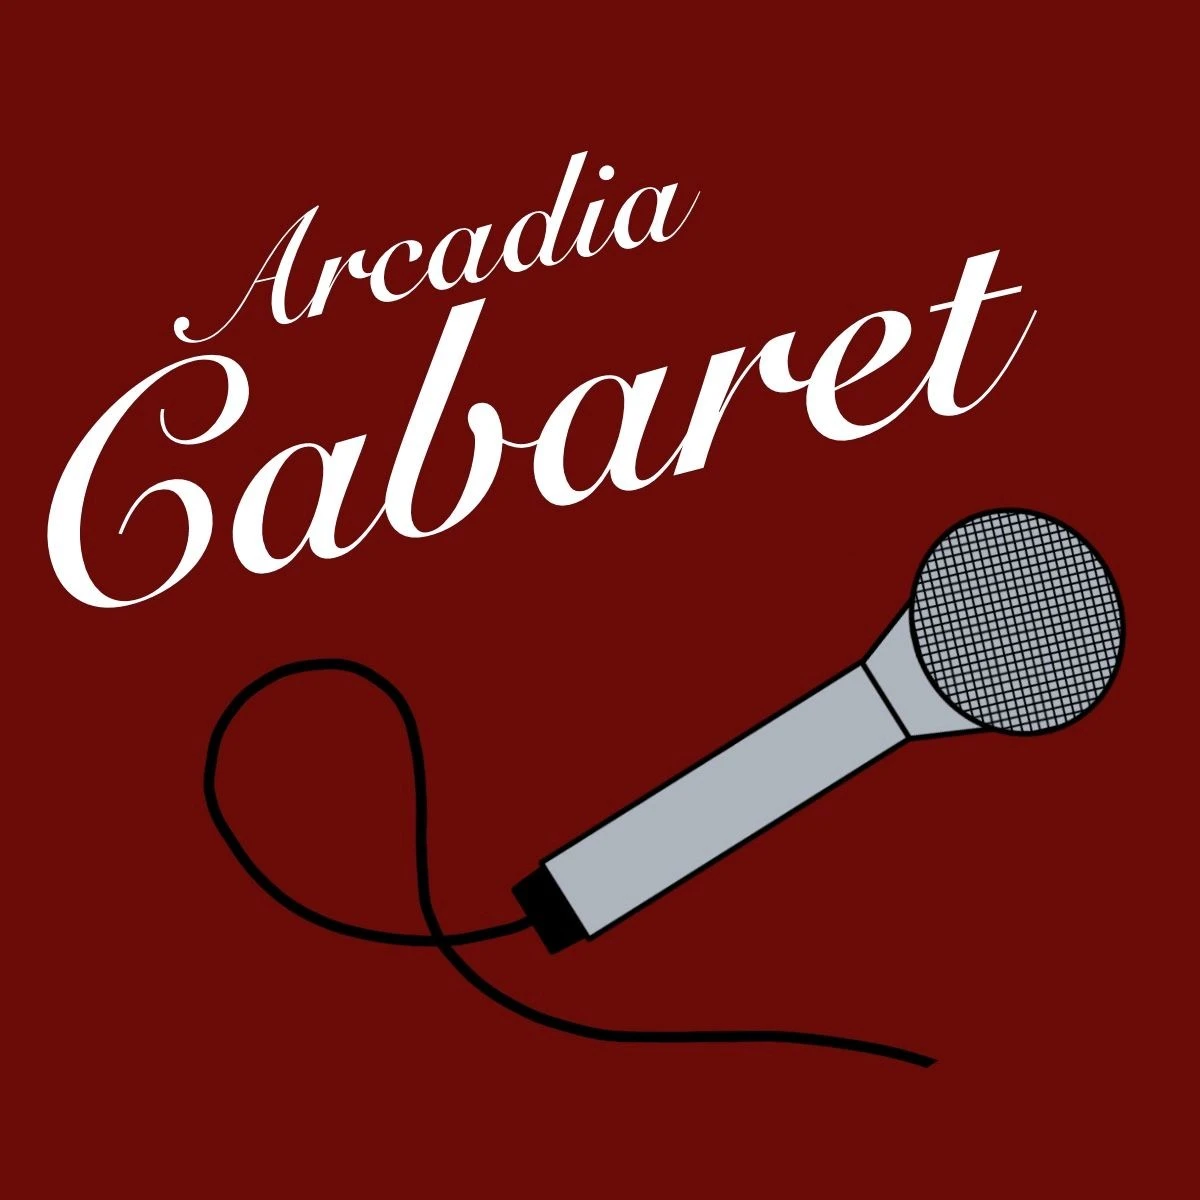 Arcadia Cabaret logo.